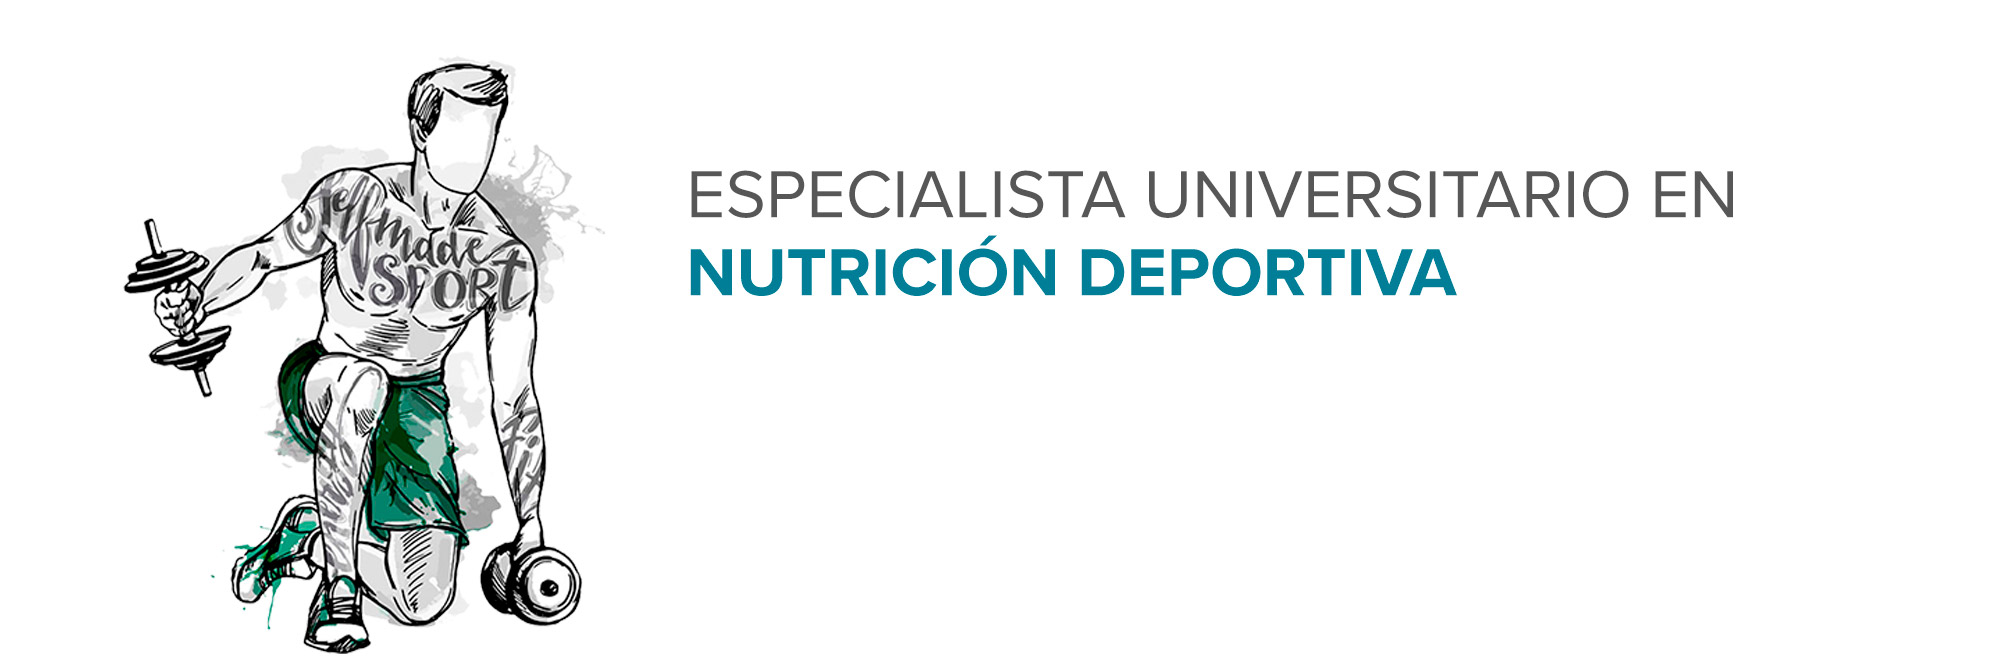 Especialista Universitario en Nutrición Deportiva (NDE2)